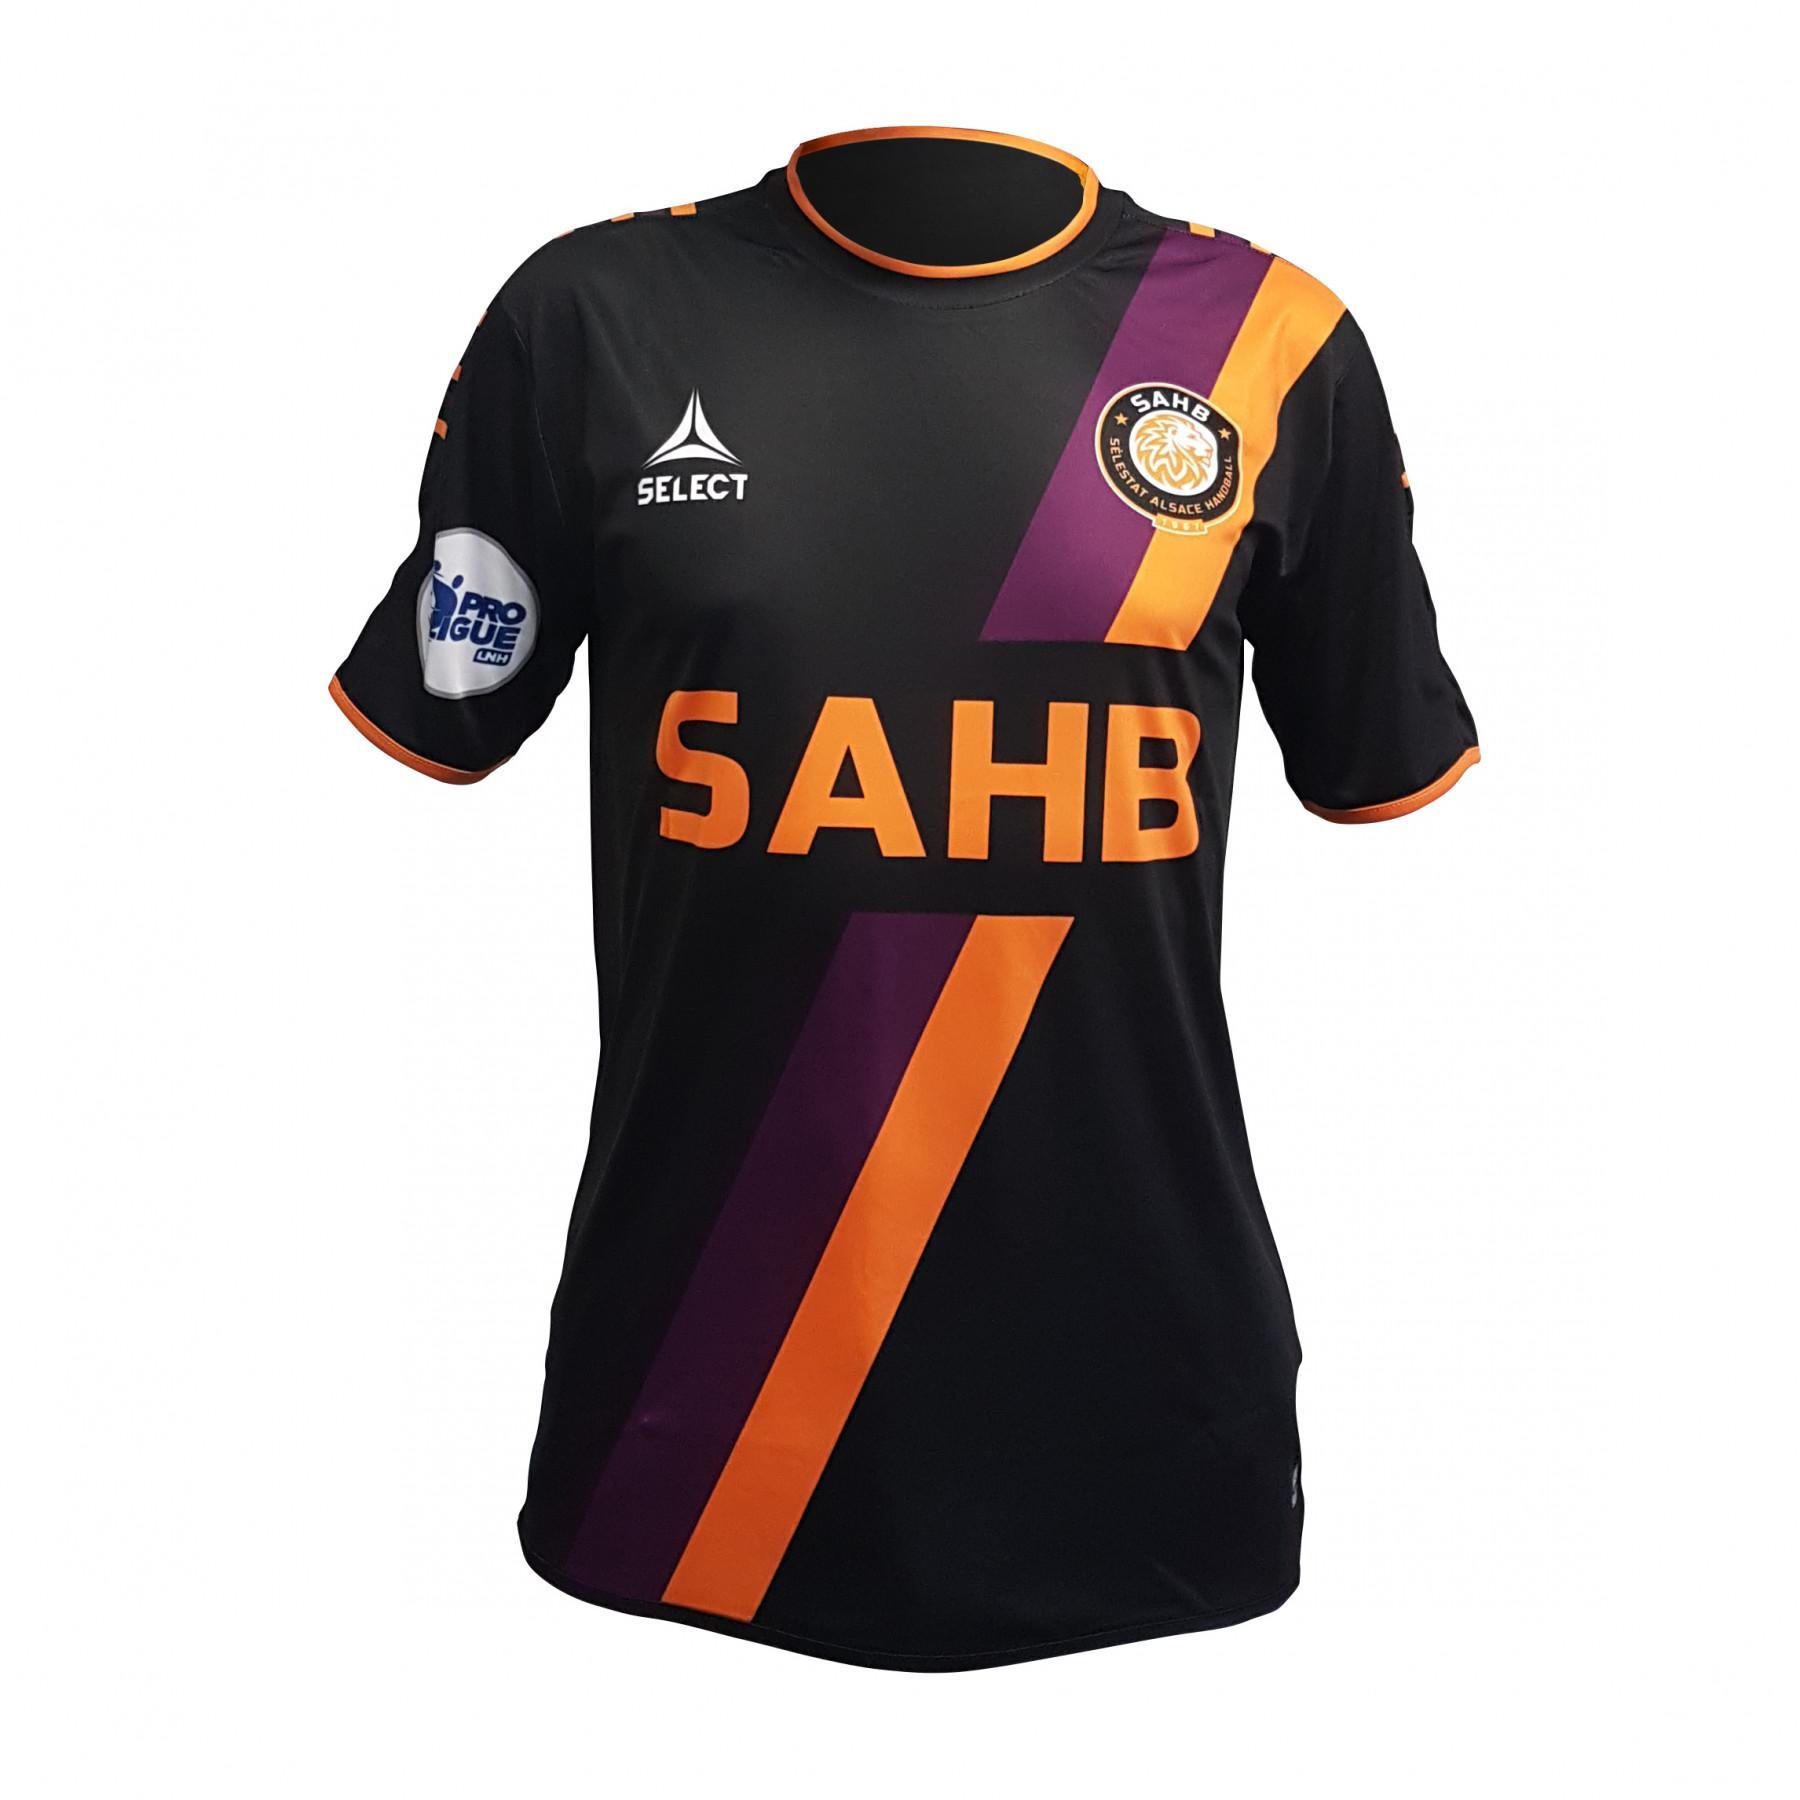 Warm-up jersey Select SAHB 2019/20